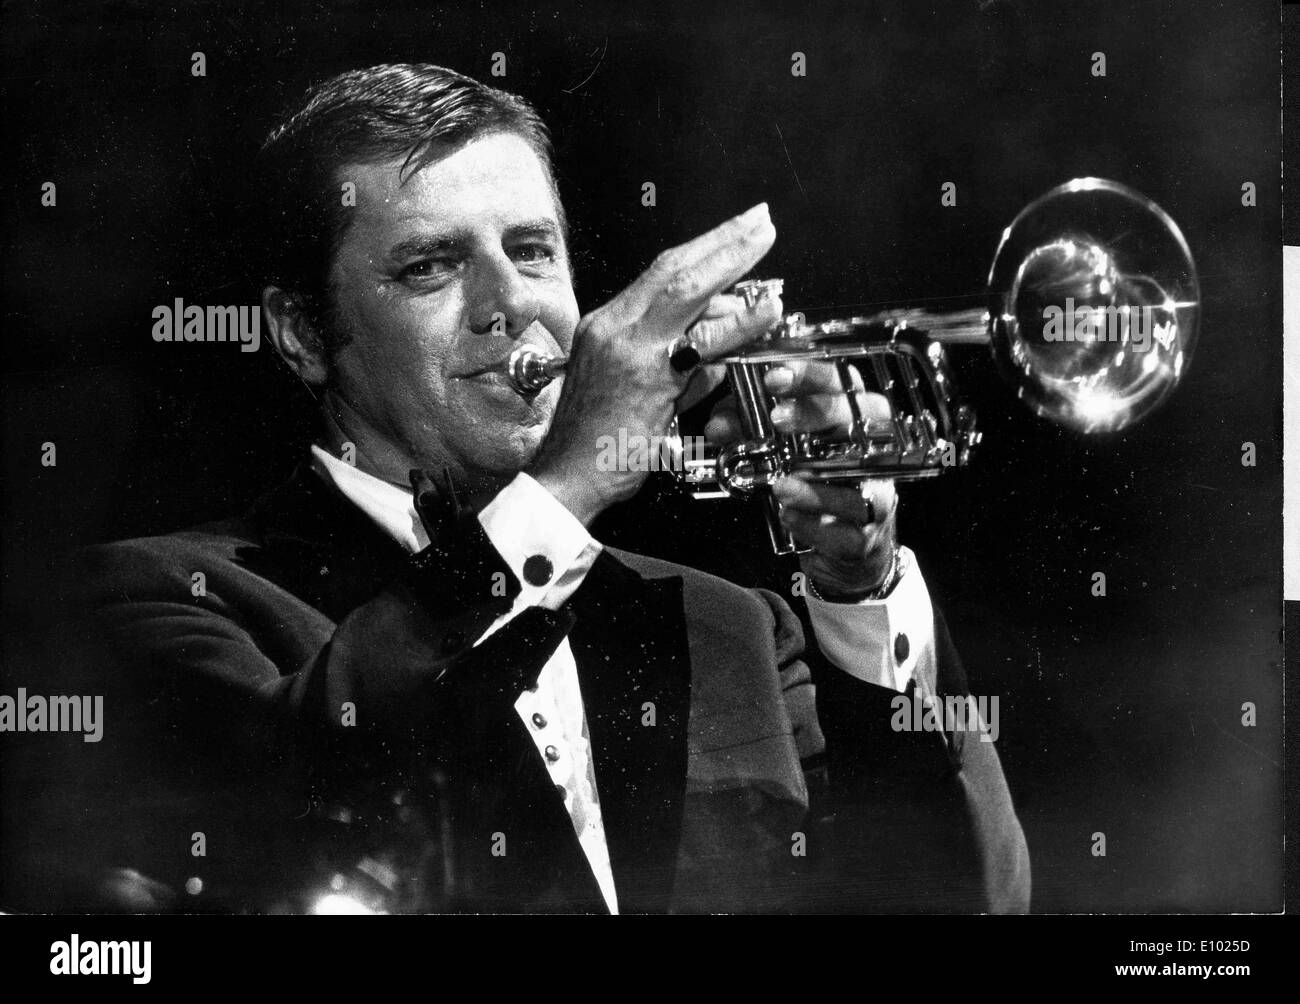 Acteur comédien Jerry Lewis à jouer de la trompette Banque D'Images